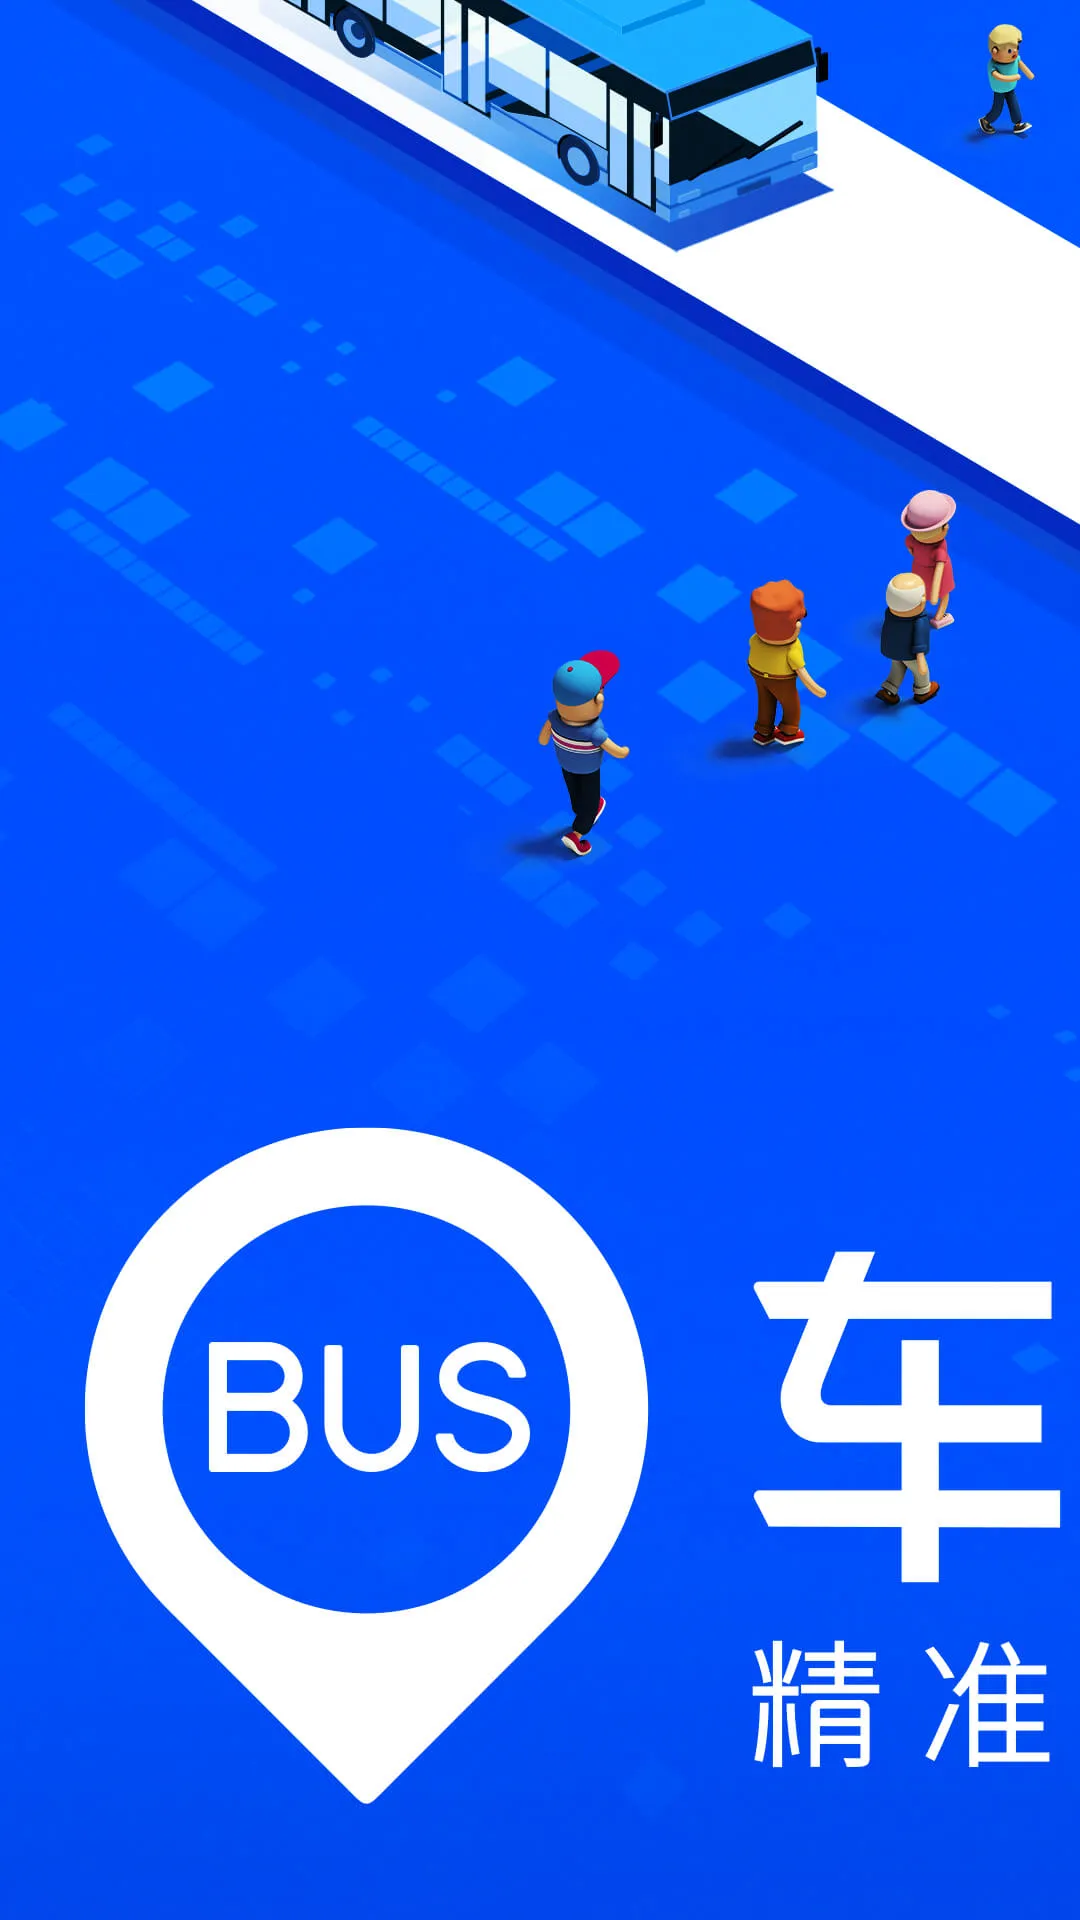 大庆公交车实时查询app下载推荐 好用的公交车查询软件推荐